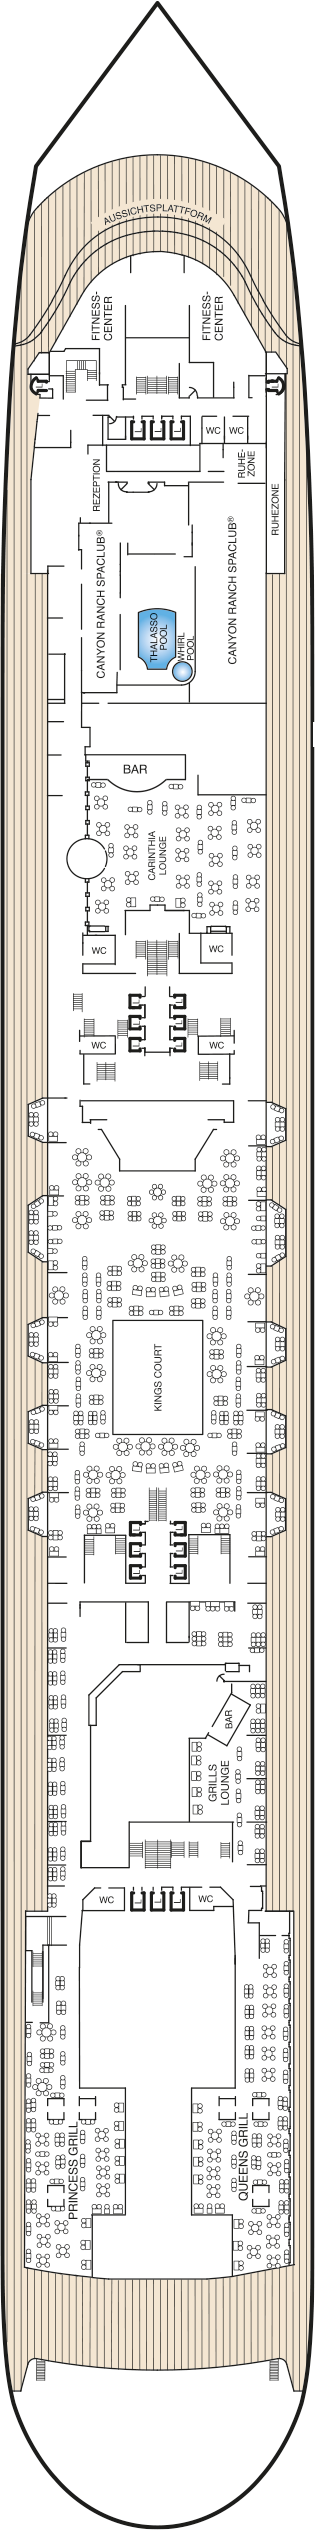 Queen Mary 2 - Decksplan Deck 7